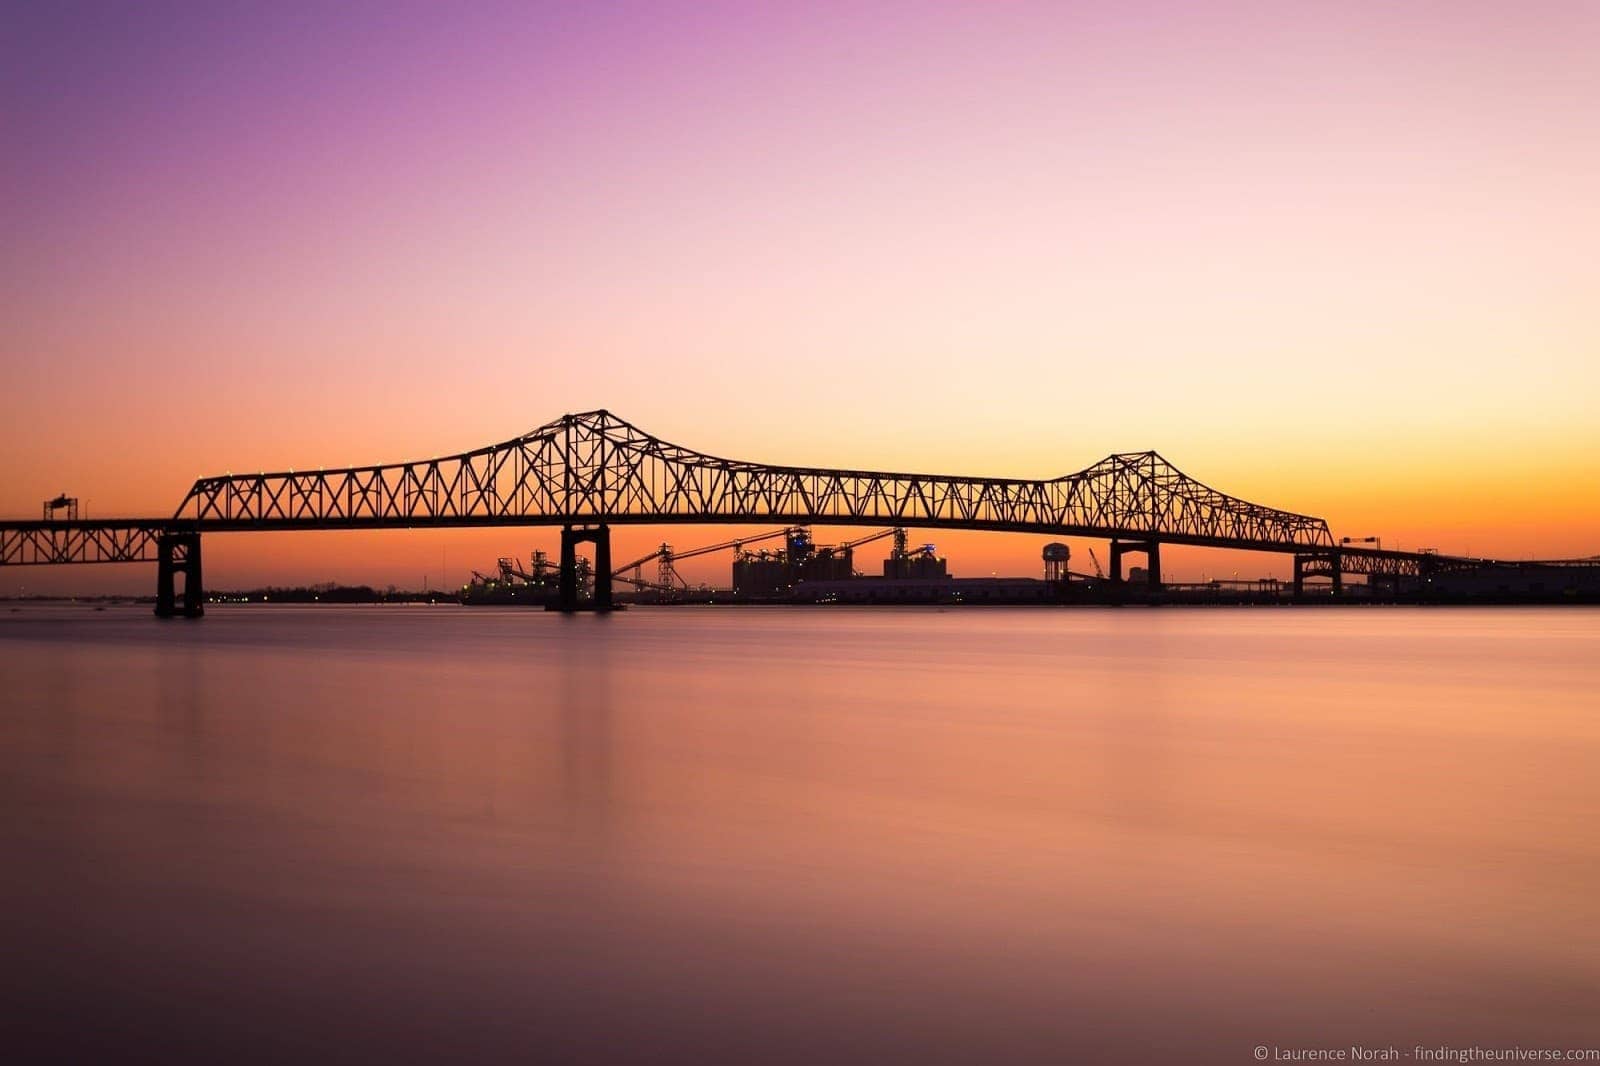 Baton Rouge Bridge at dusk